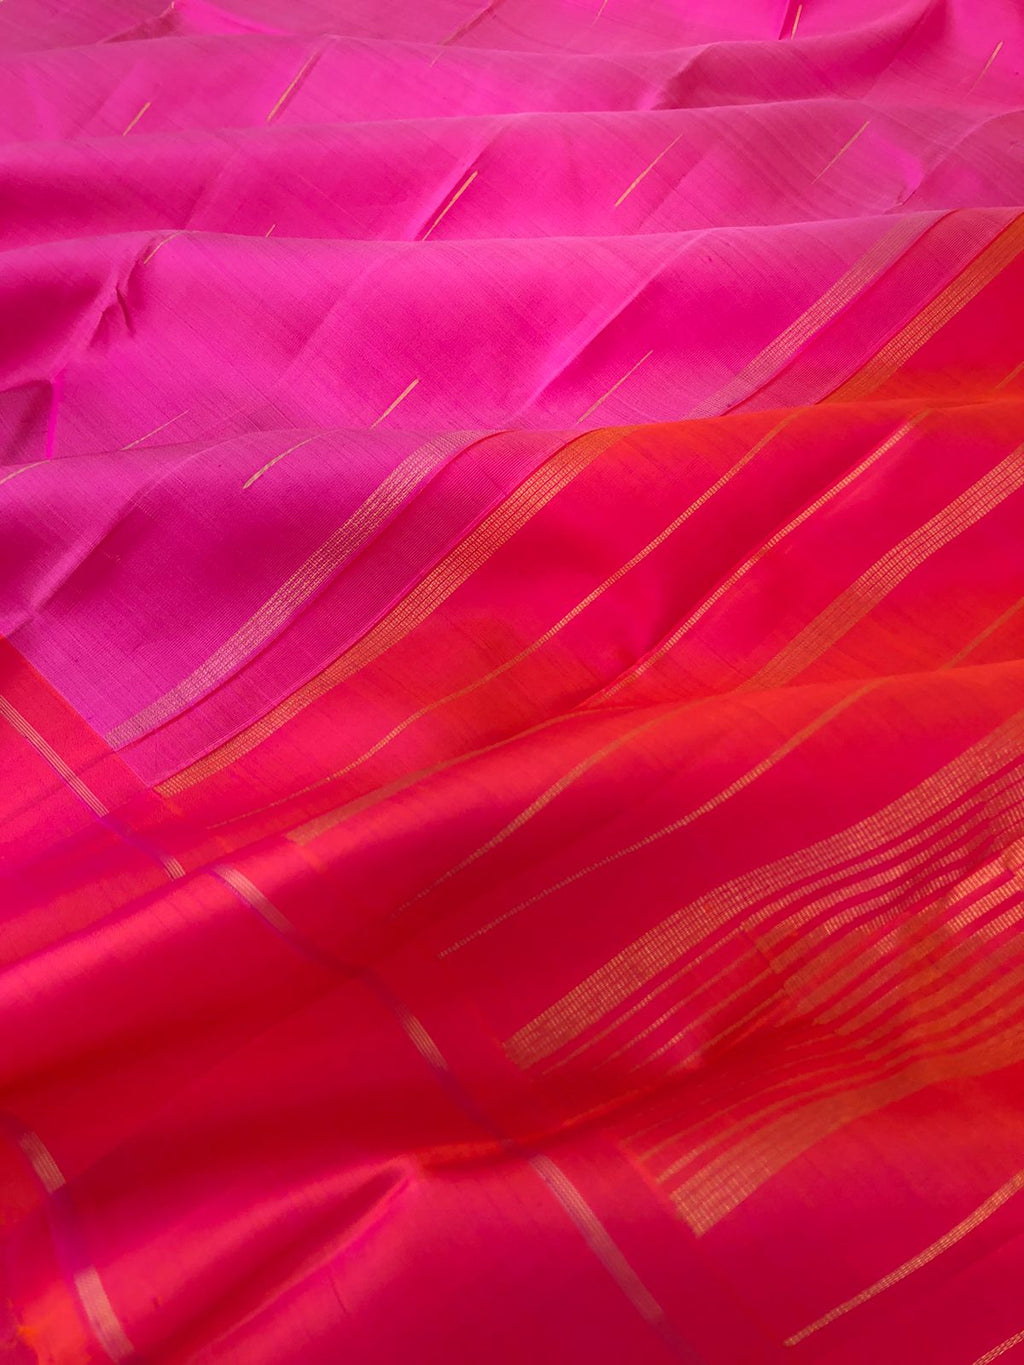 Daily Drape Kanchivarams - unusual dusky pink on pink raindrops or malli mokku woven buttas